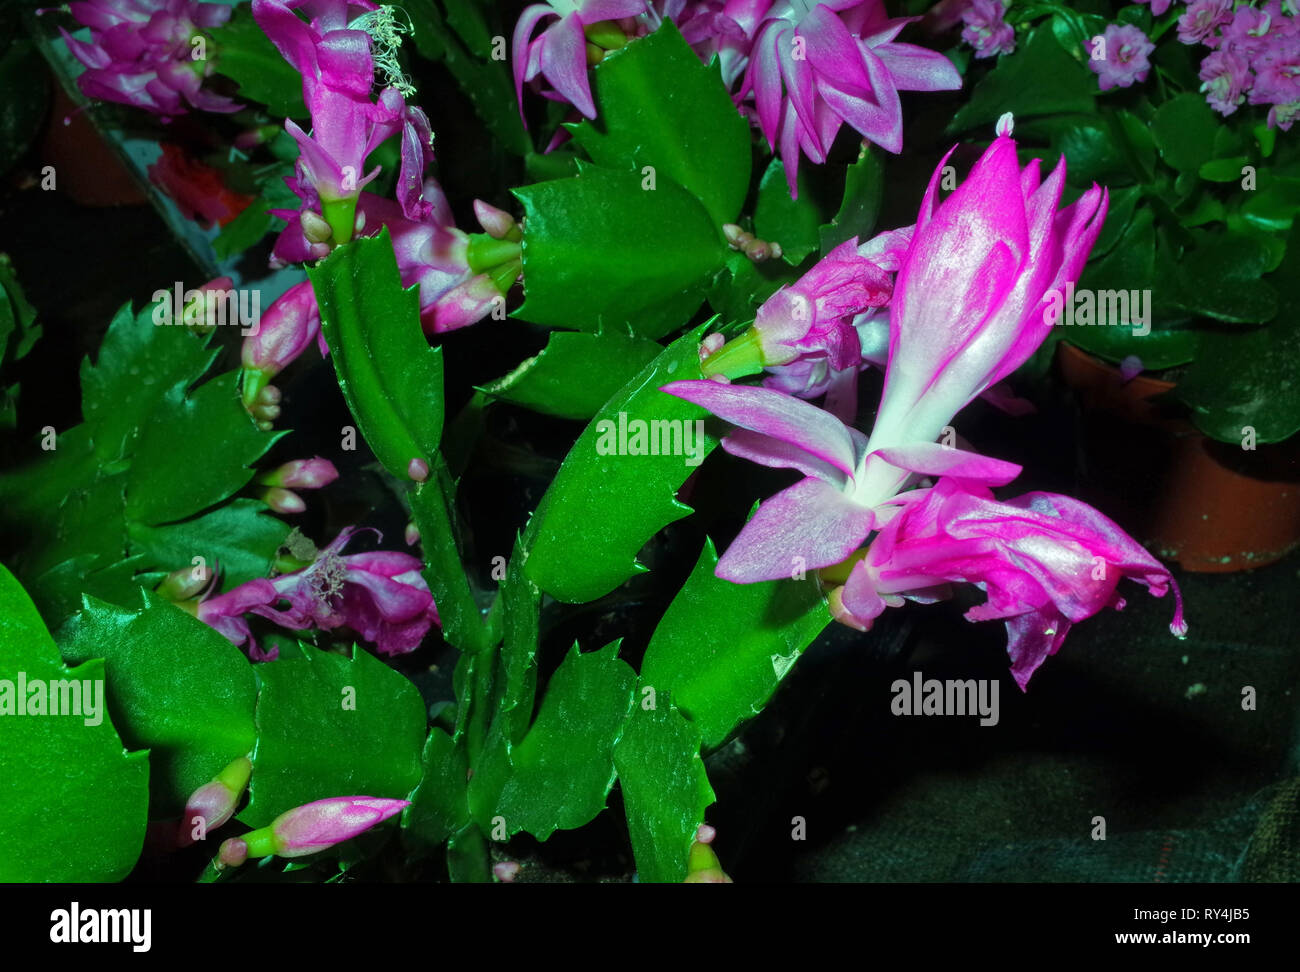 Epiphyllum flowering close-up Stock Photo